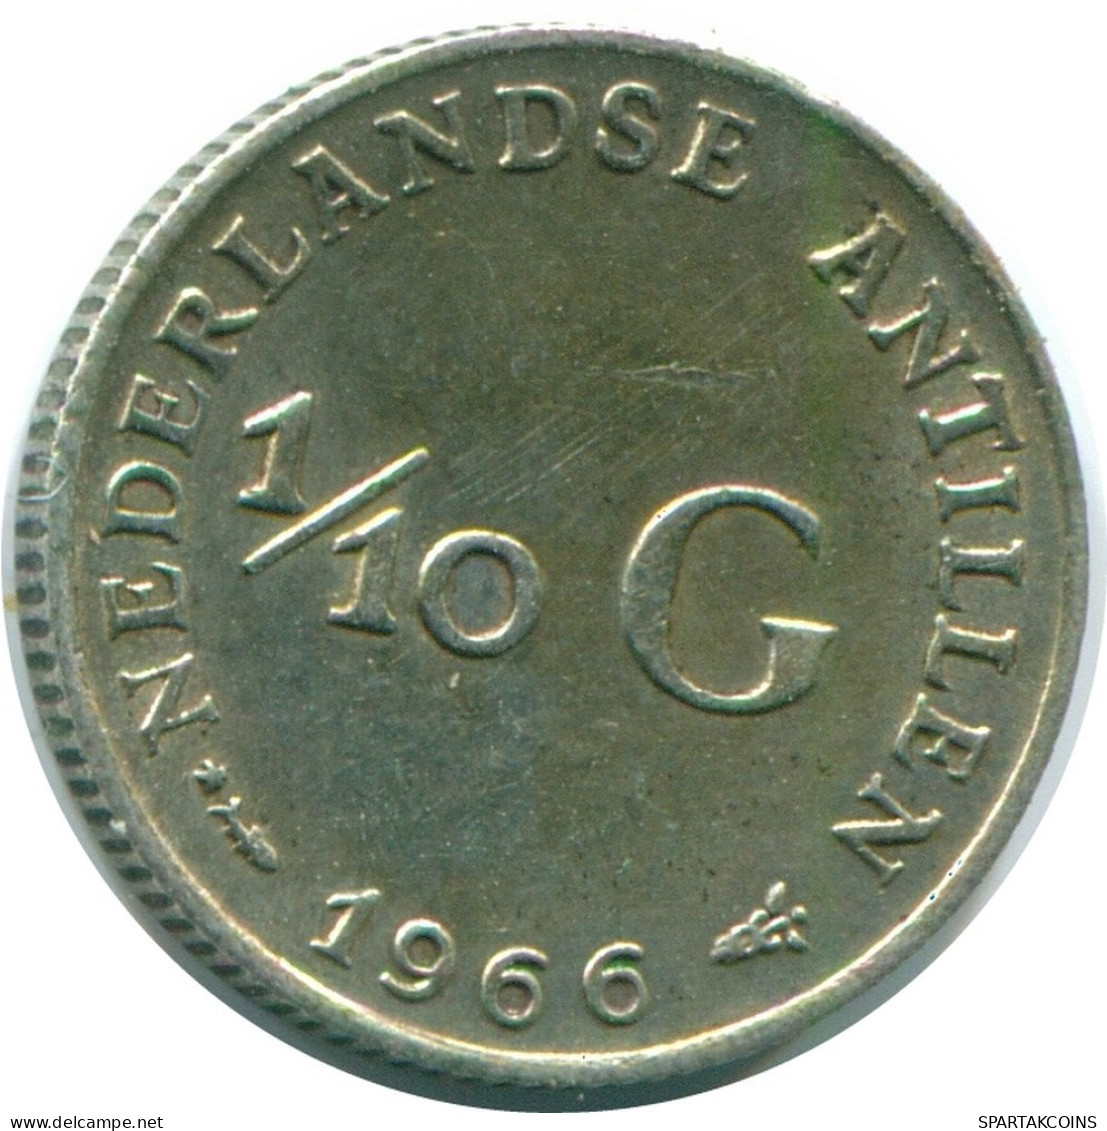 1/10 GULDEN 1966 NIEDERLÄNDISCHE ANTILLEN SILBER Koloniale Münze #NL12768.3.D.A - Niederländische Antillen